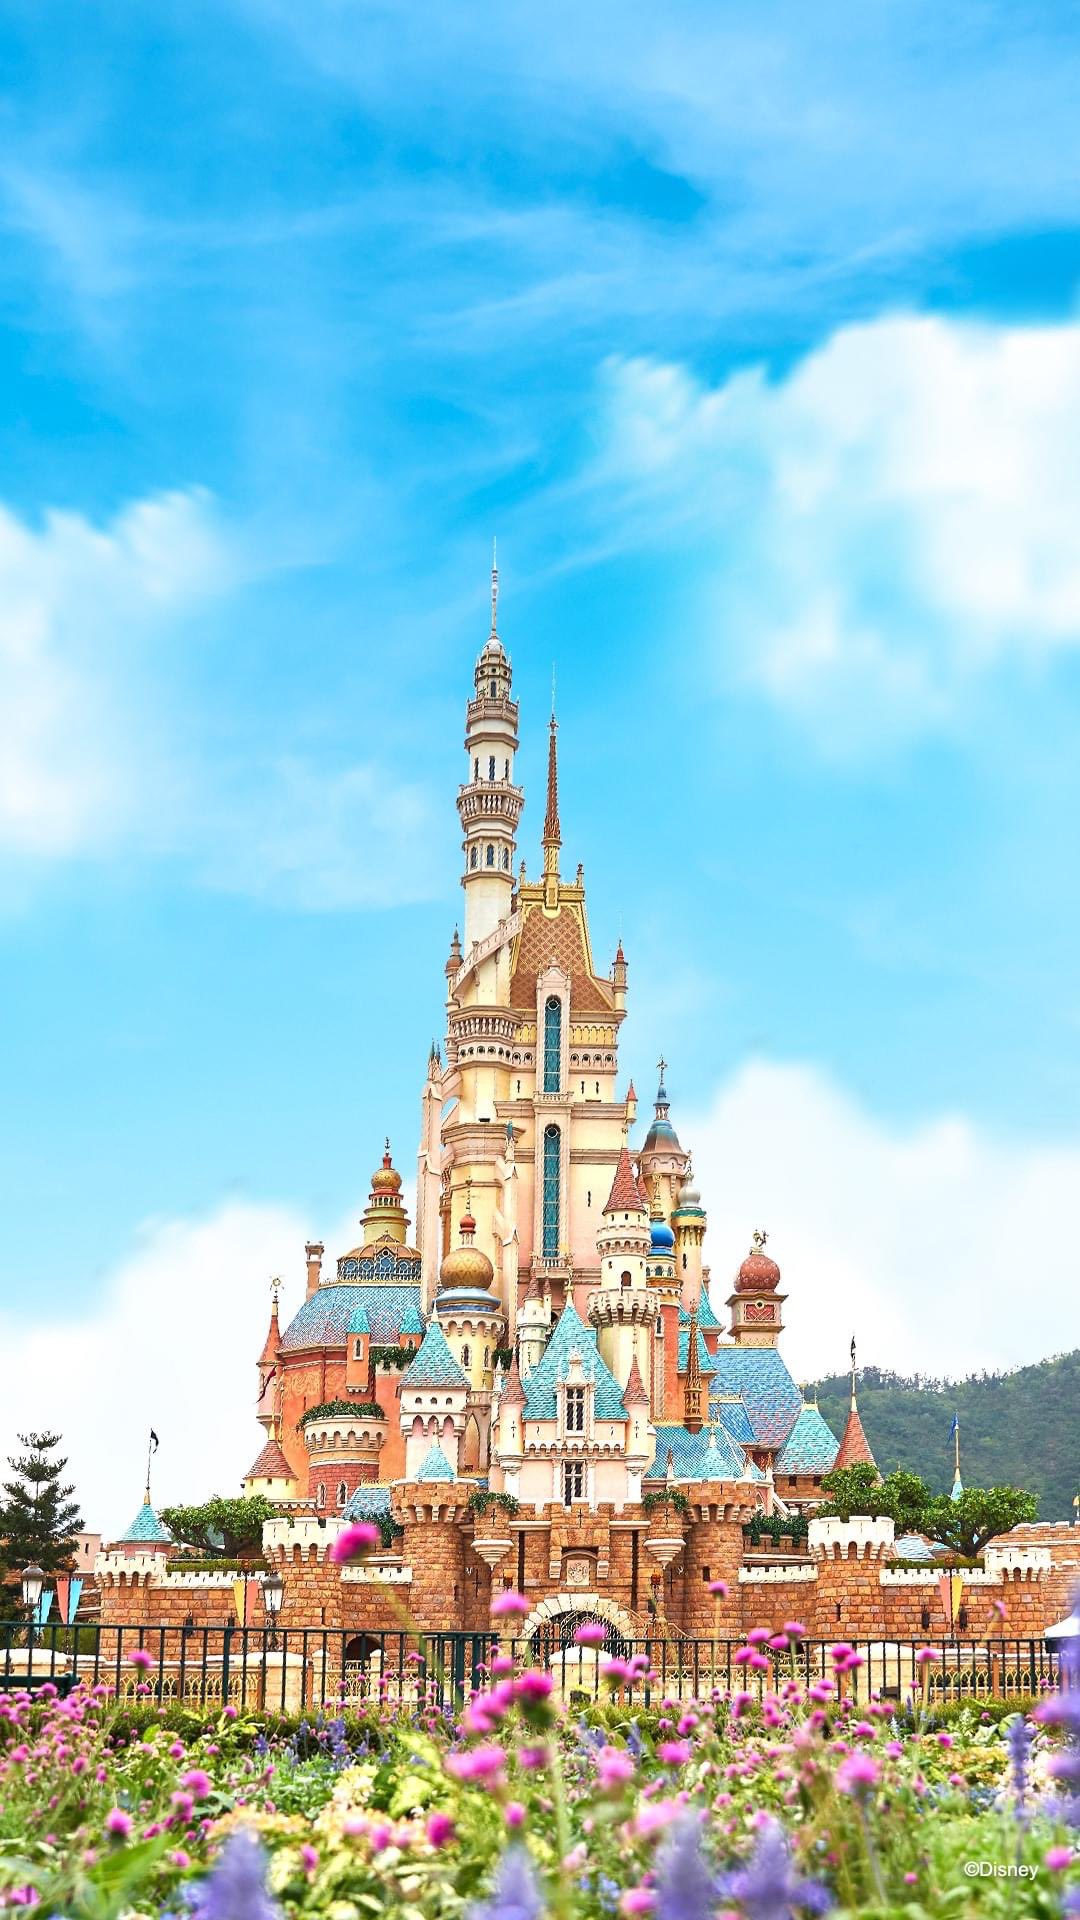 Hong Kong Main Street Gazette Kong Disneyland Castle of Magical Dreams Official Wallpaper 4